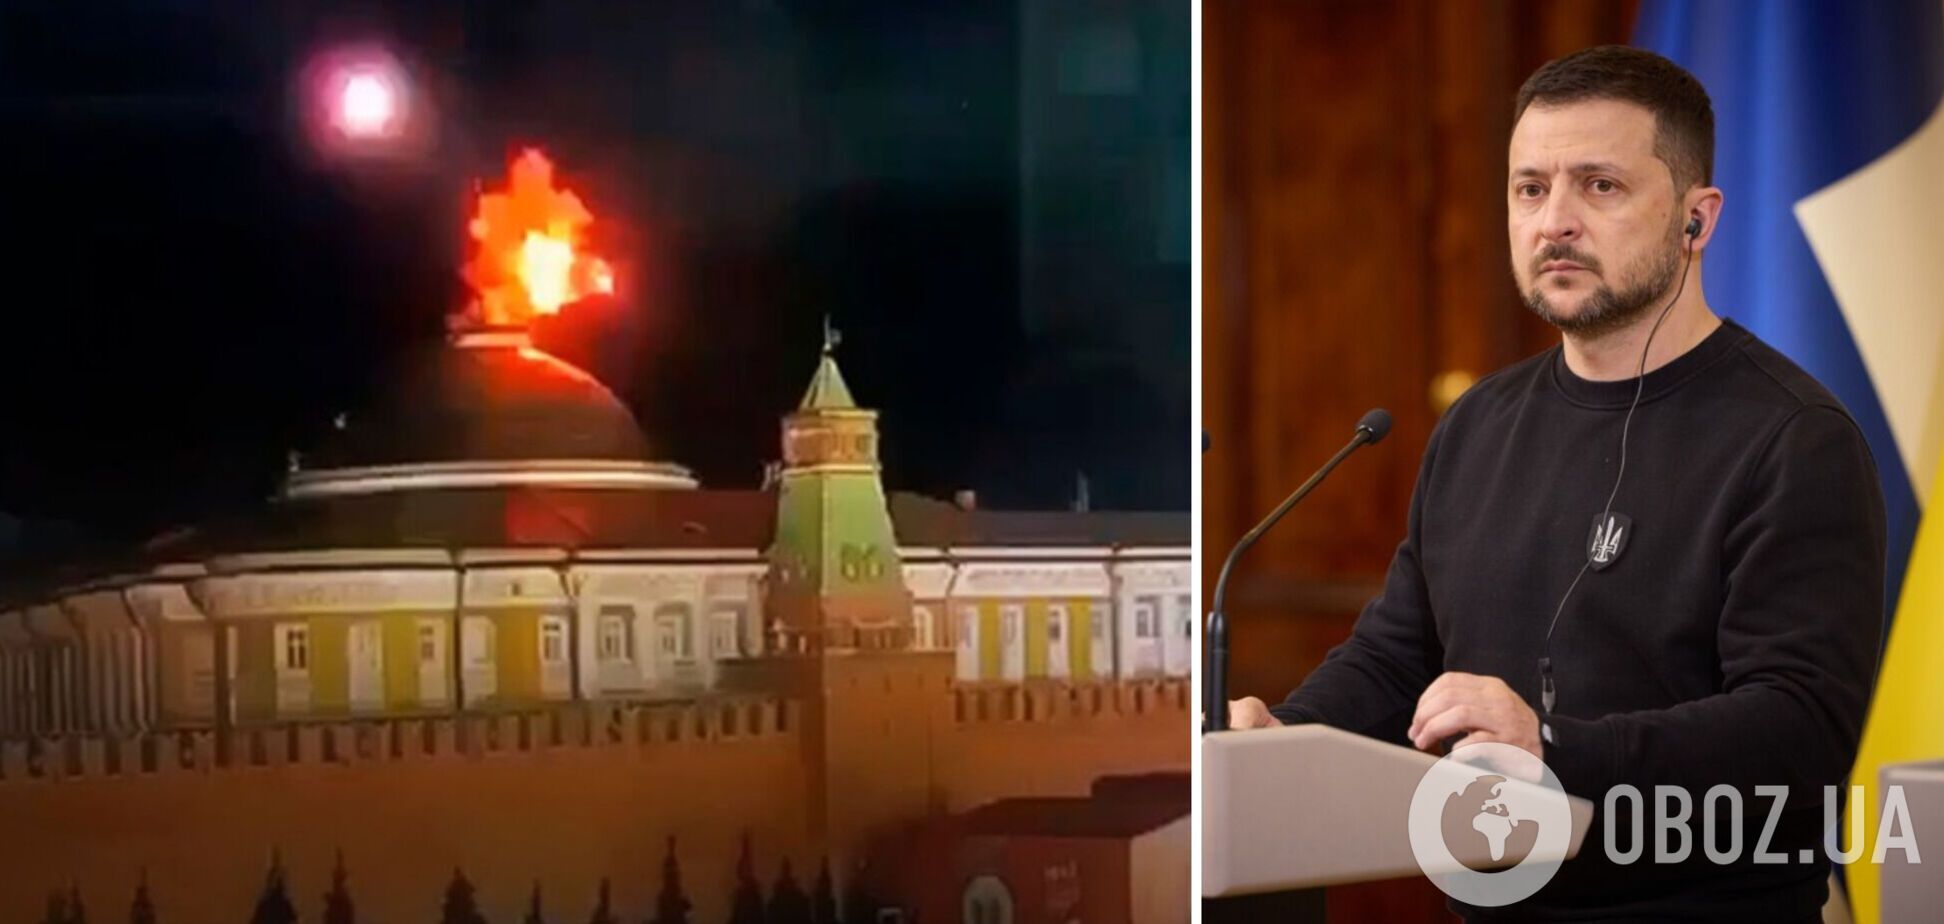 'Мы не атакуем ни Москву, ни Путина': Зеленский прокомментировал ночные взрывы над Кремлем. Видео